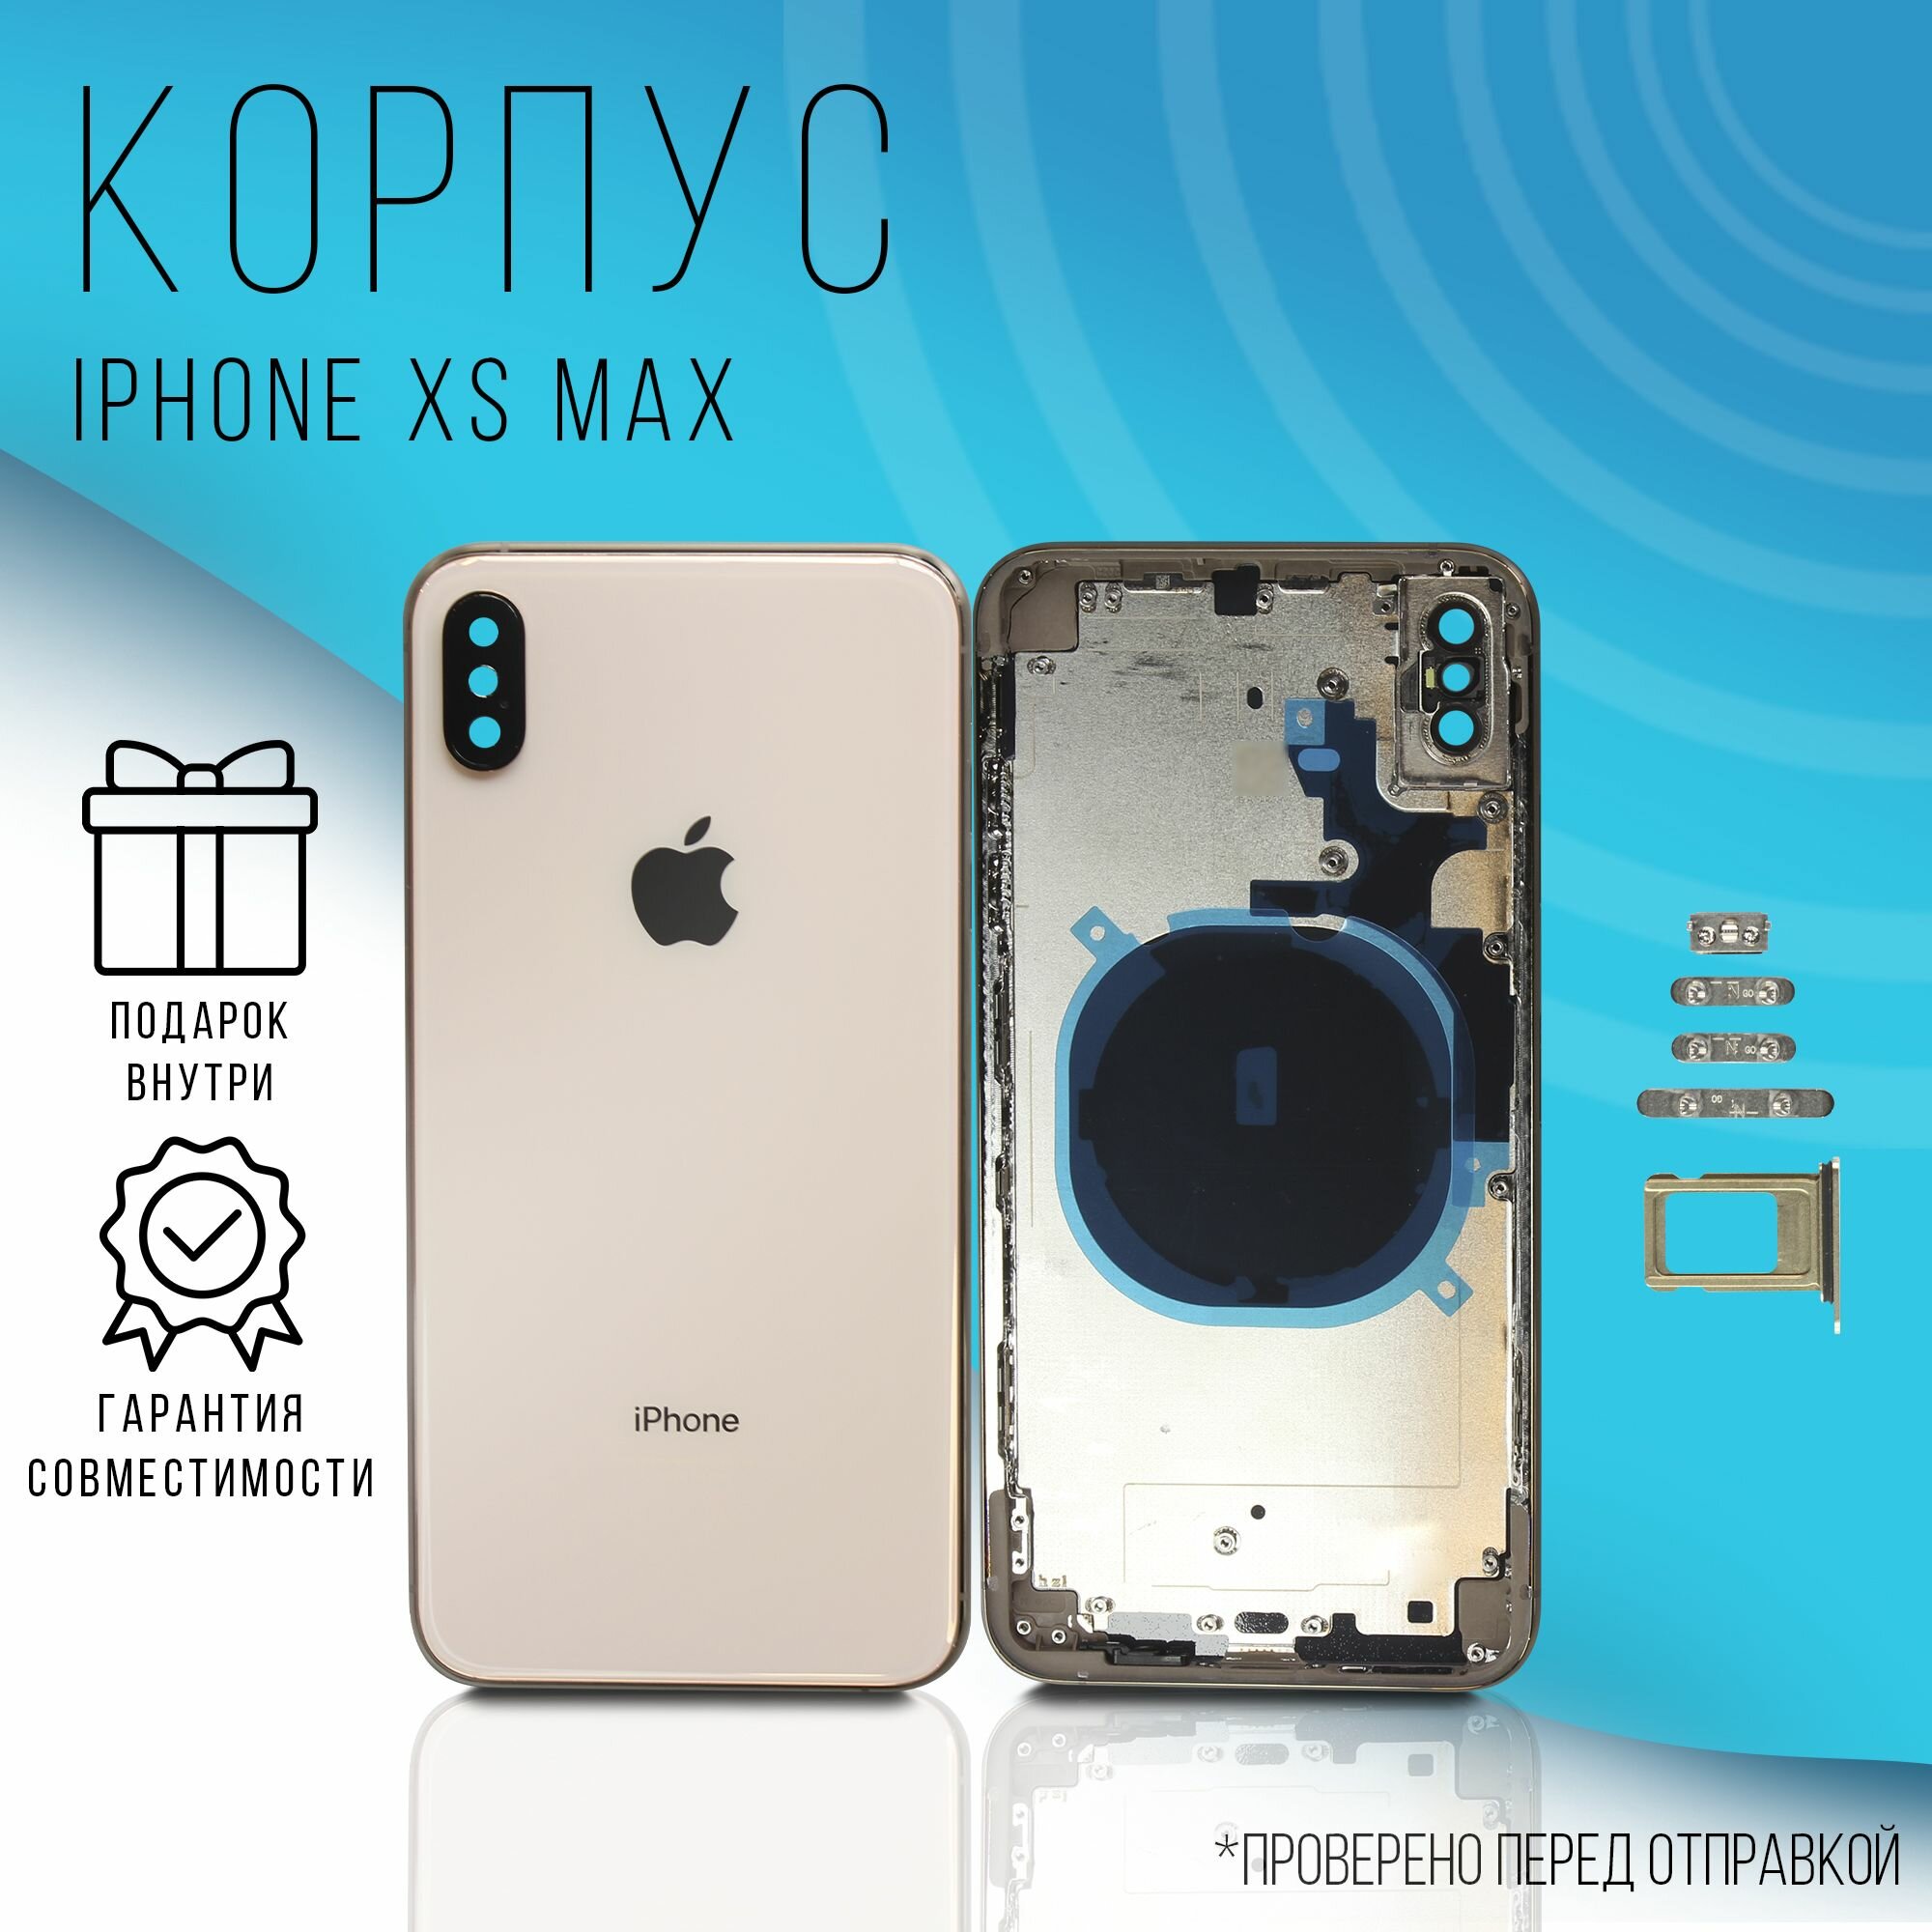 Корпус iPhone XS Max (Gold) + монтажные проклейки